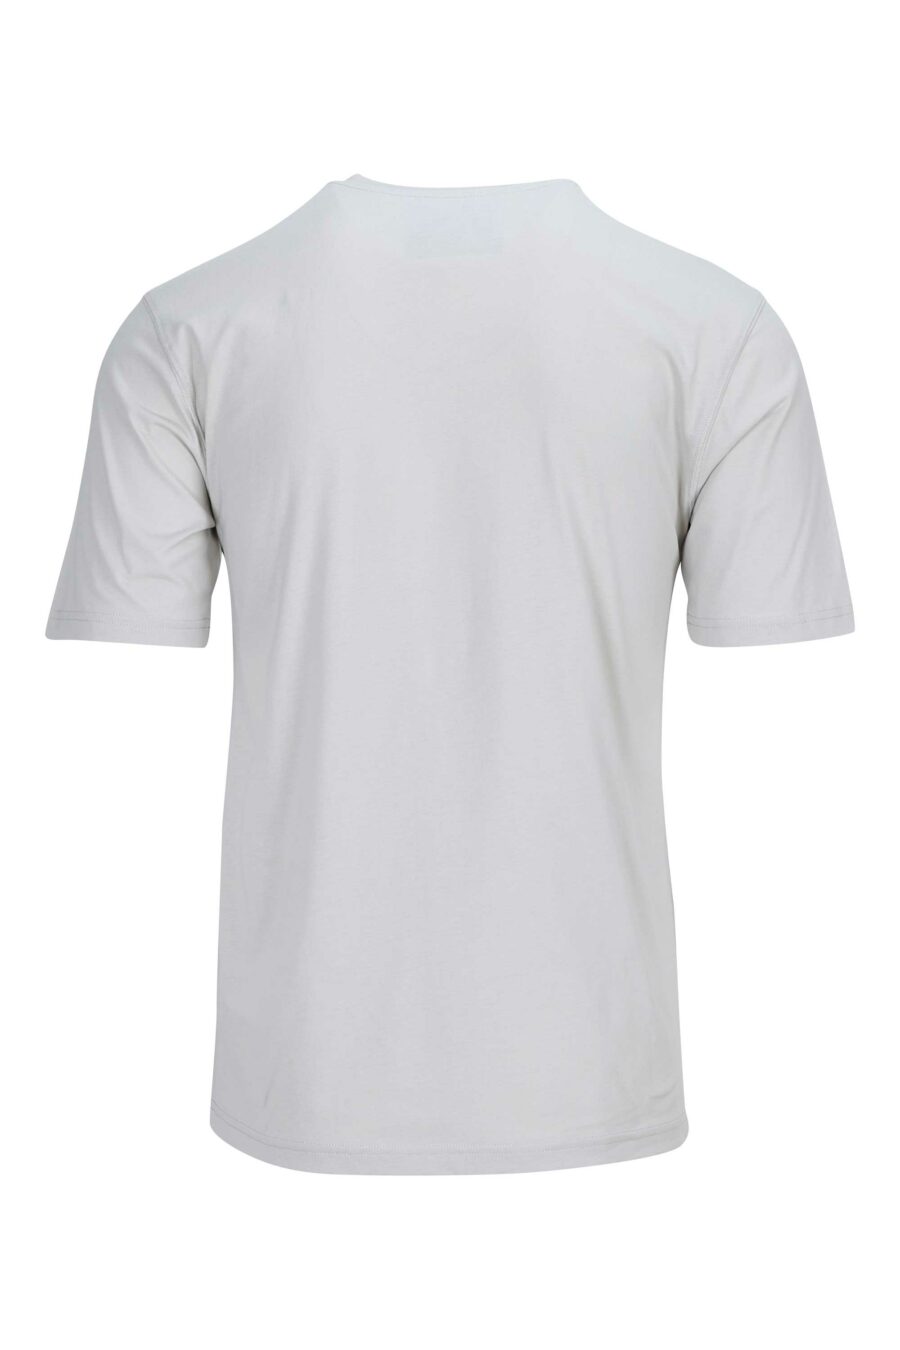 T-shirt cinzenta com maxilogo "Moschino" - 889316954807 1